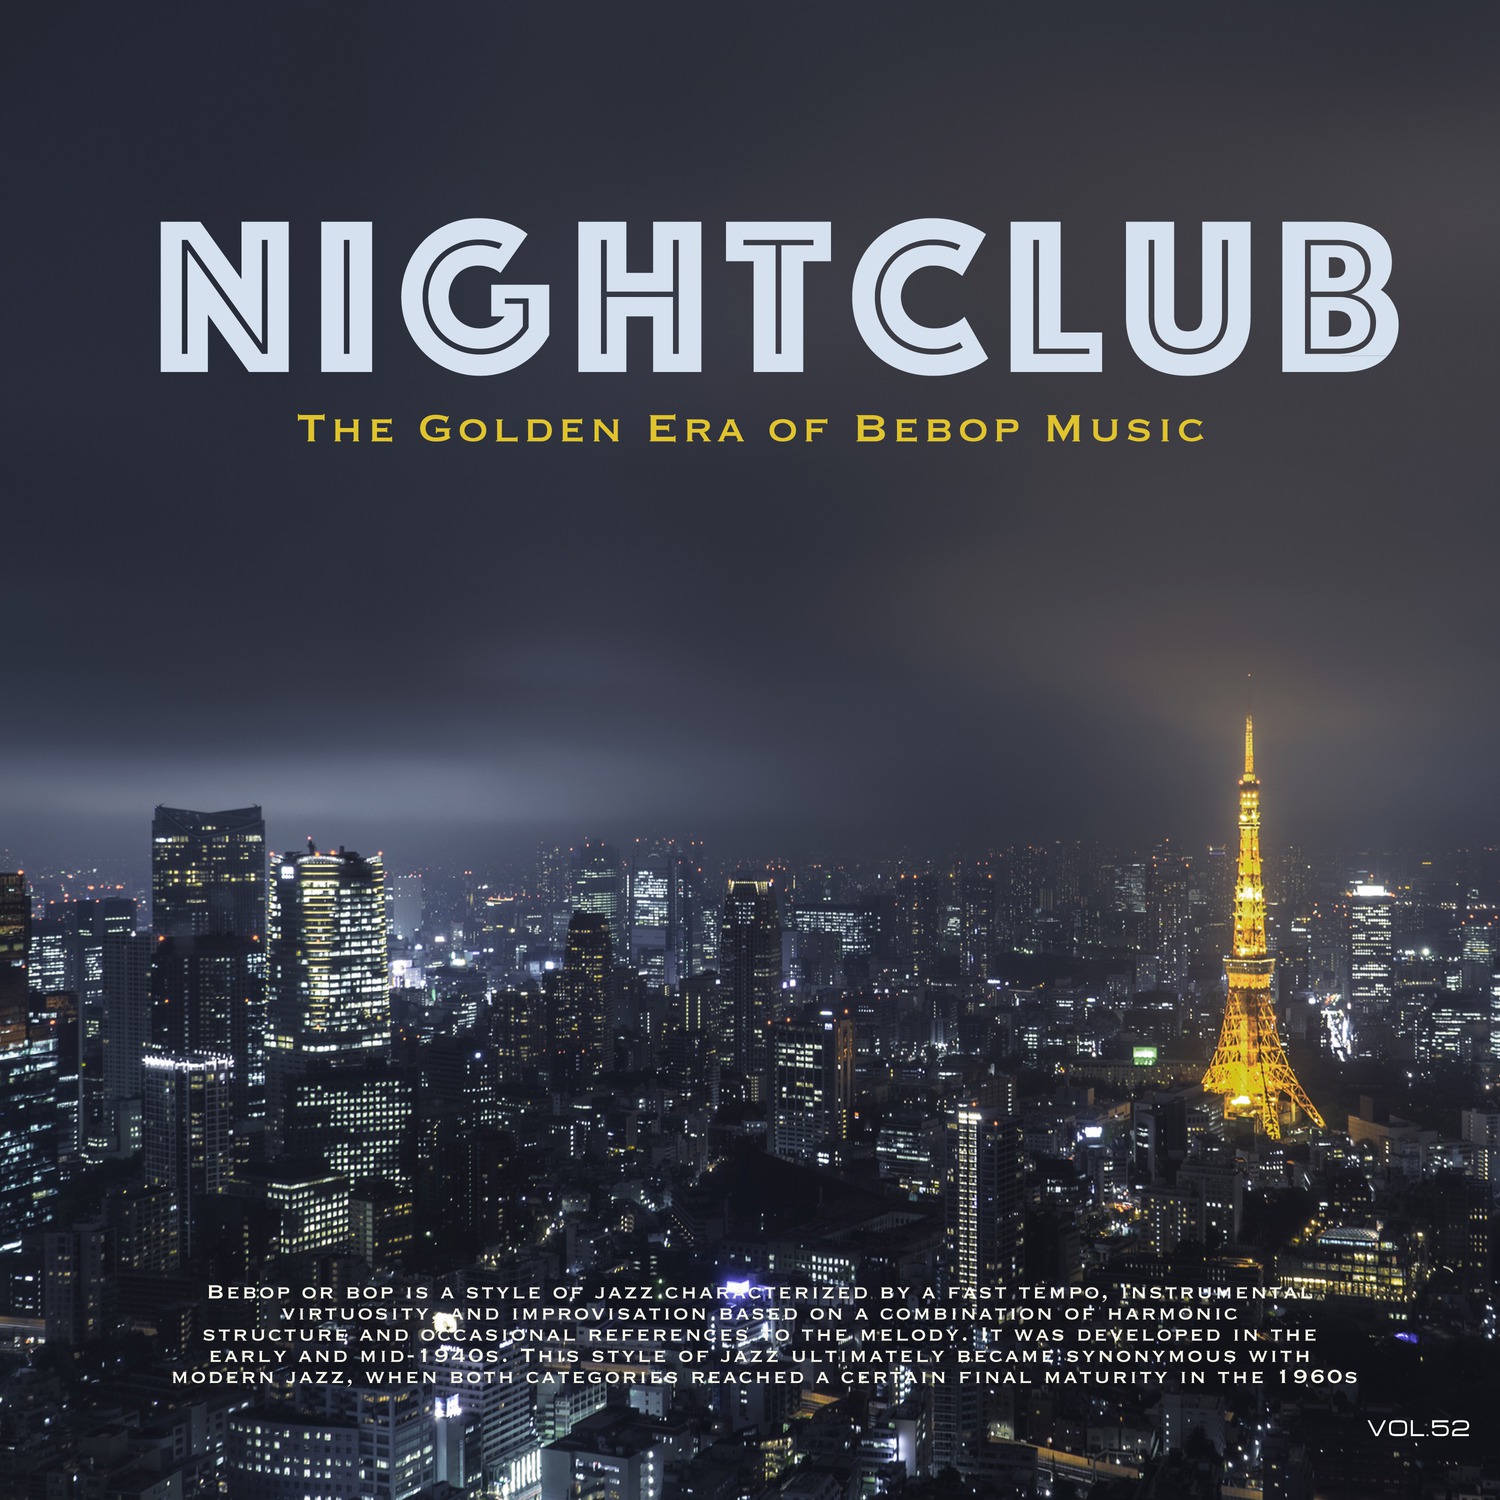 Nightclub, Vol. 52 (The Golden Era of Bebop Music)